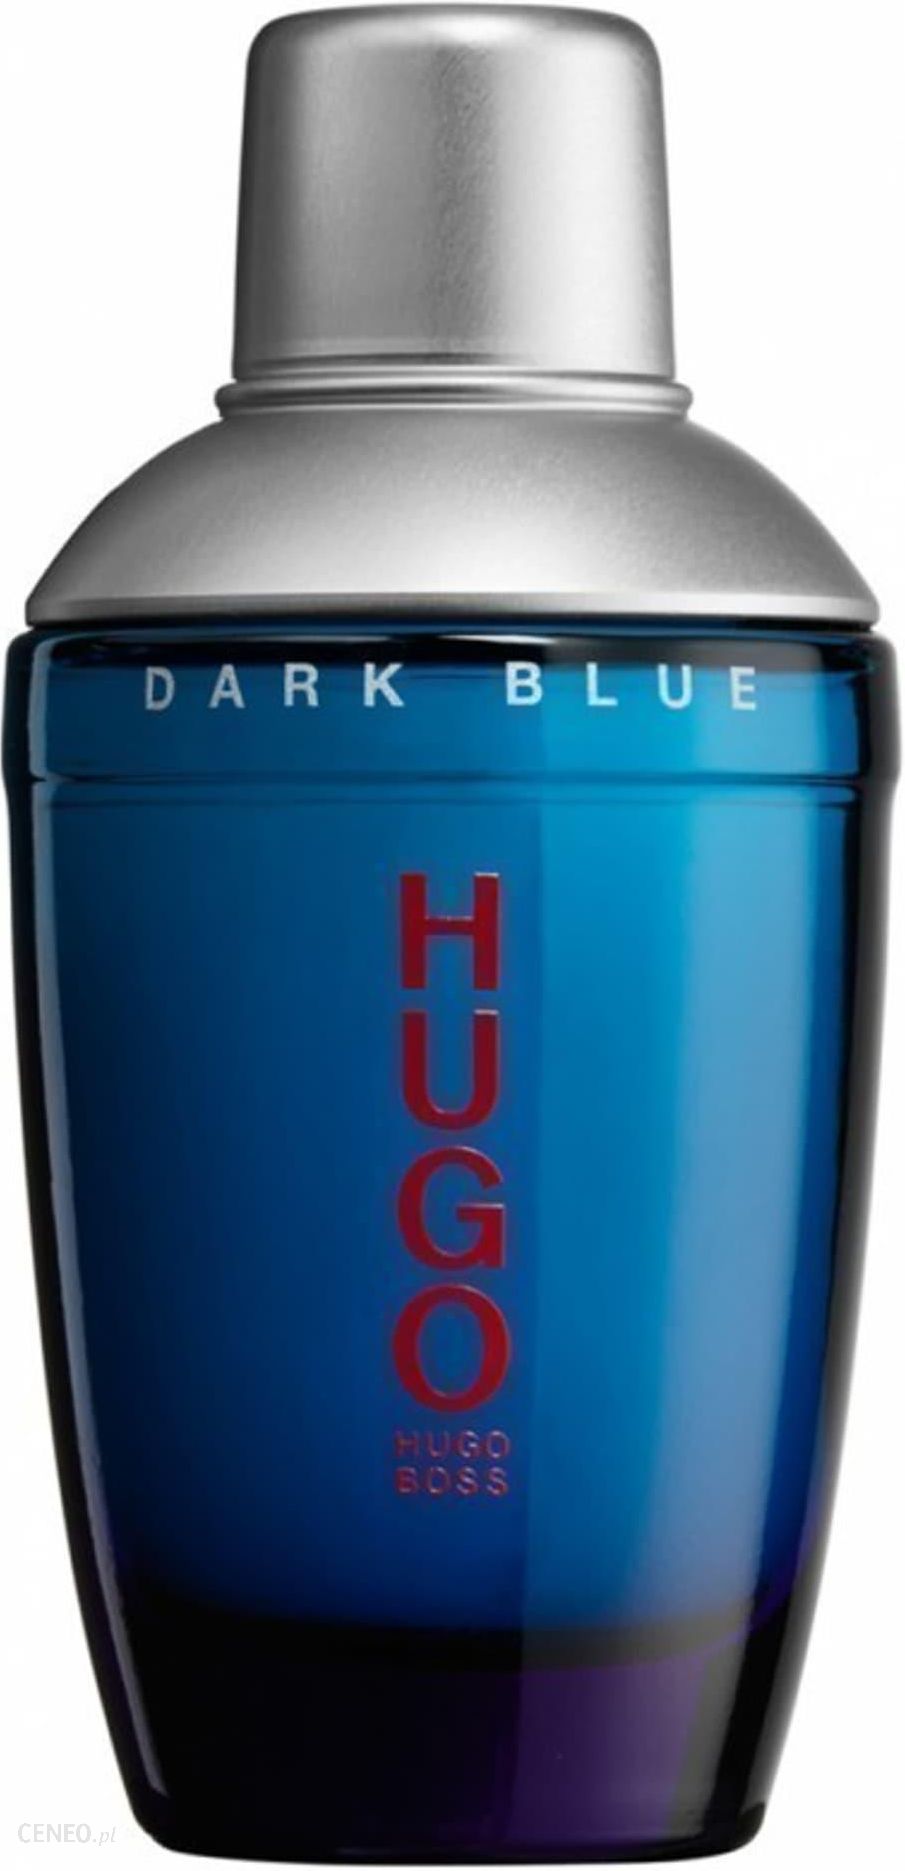 hugo boss dark blue notino